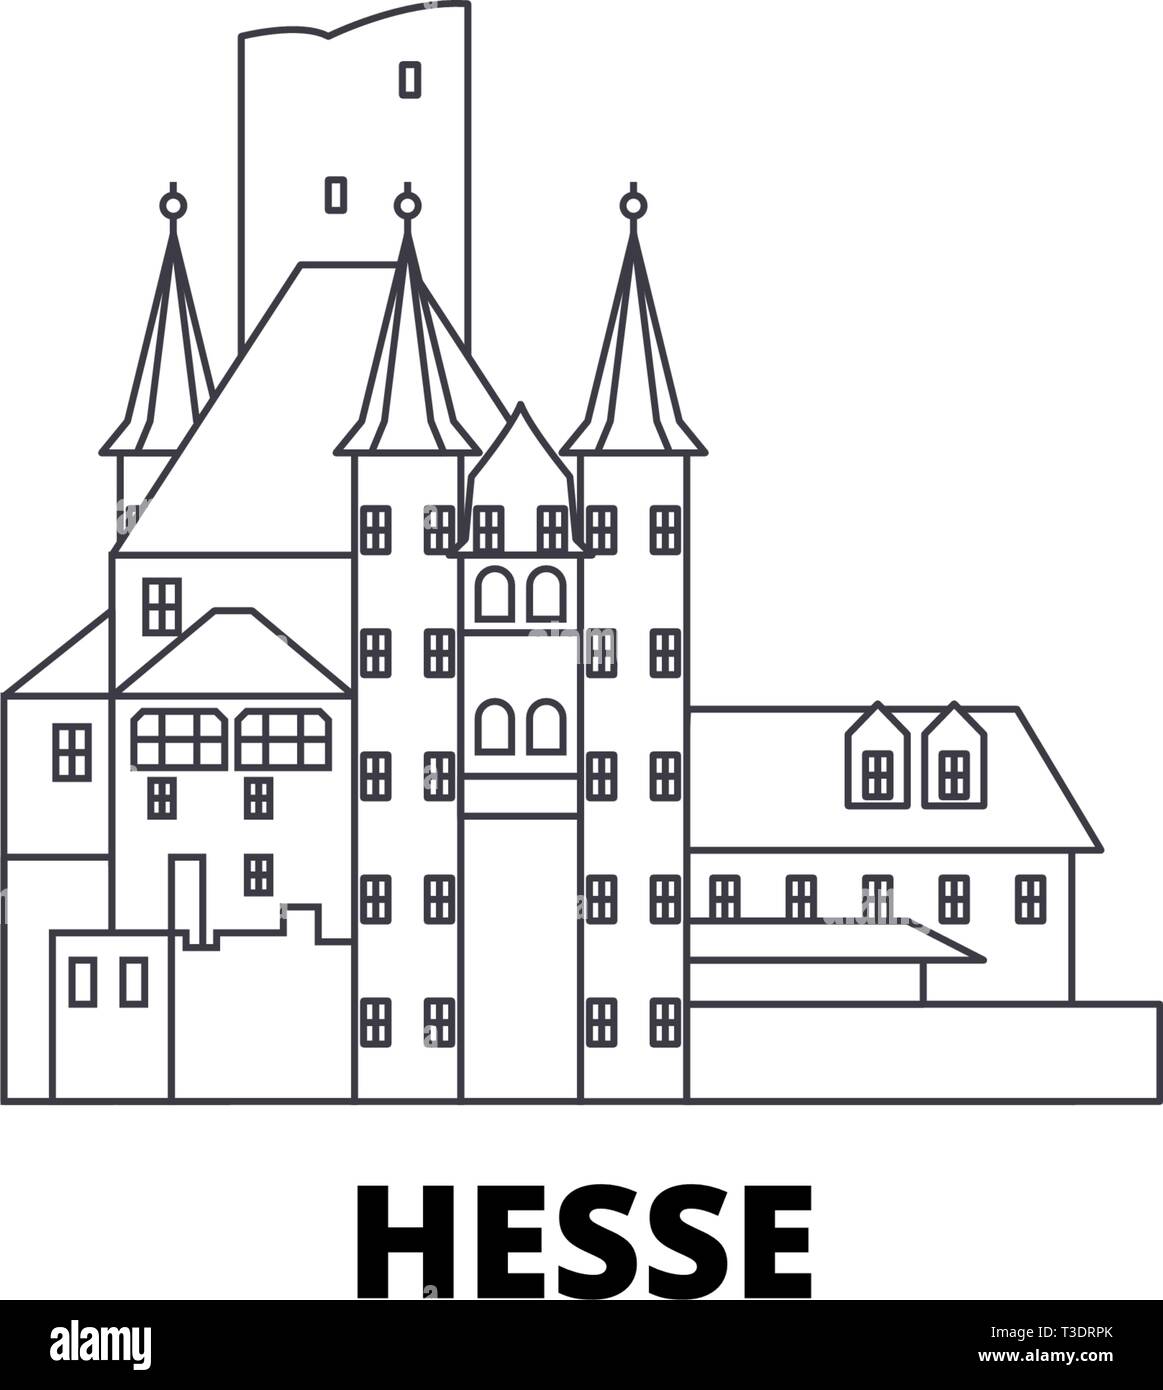 Allemagne, Hesse, la ligne de la vallée du Haut-Rhin moyen skyline voyage ensemble. Allemagne, Hesse, contours de la vallée du Haut-Rhin moyen d'illustration vectorielle, symbole de la ville Illustration de Vecteur